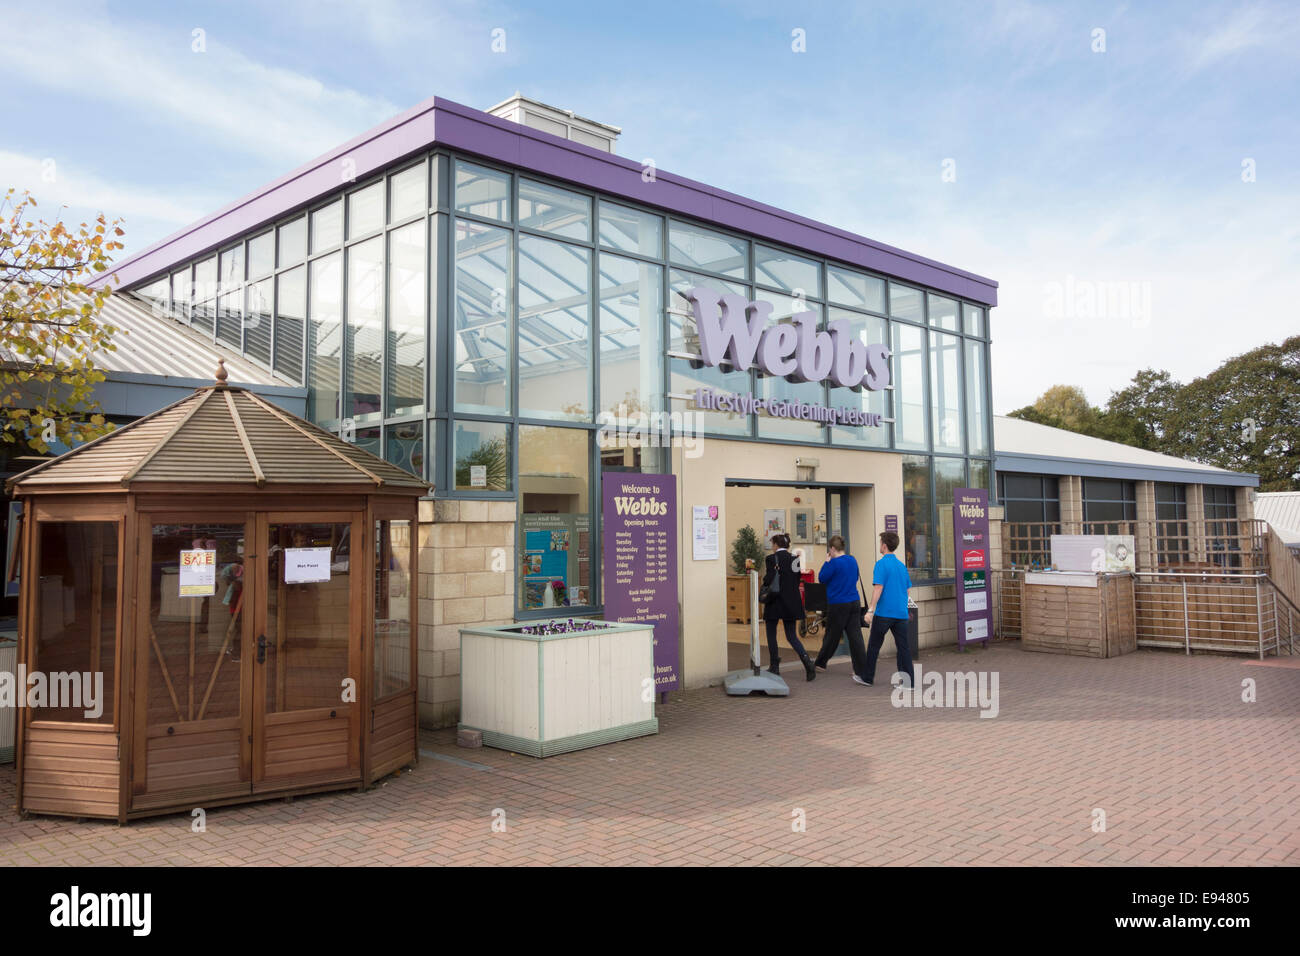 Webbs garden centre entrance Stock Photo